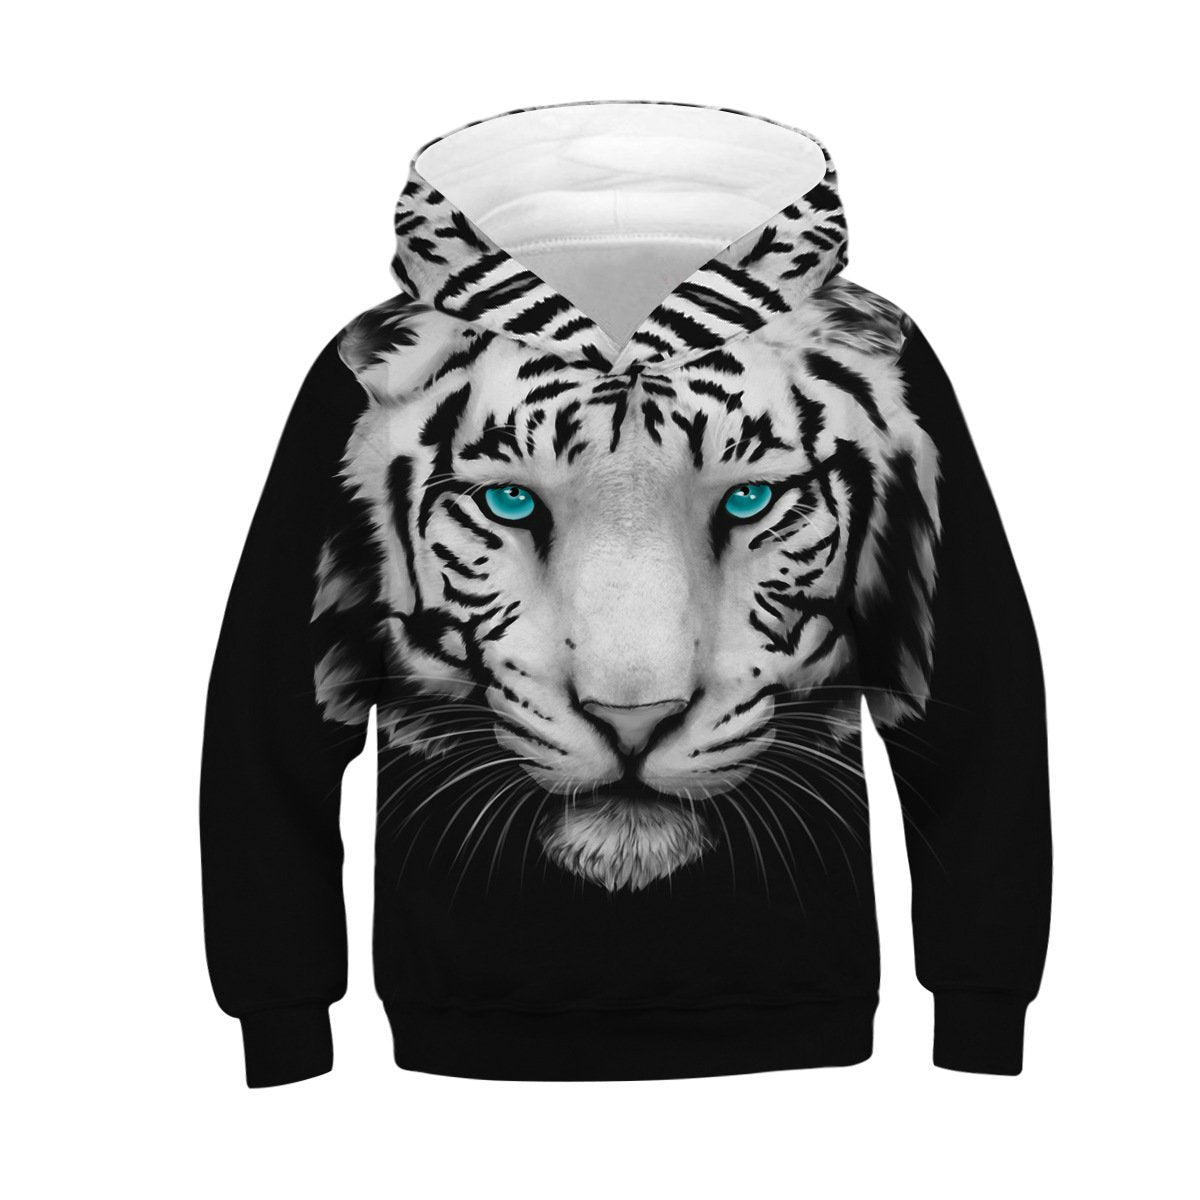 Unisex Realistic 3D White Tiger Print Pullover Hoodie Kids Hooded Sweatshirt - mihoodie